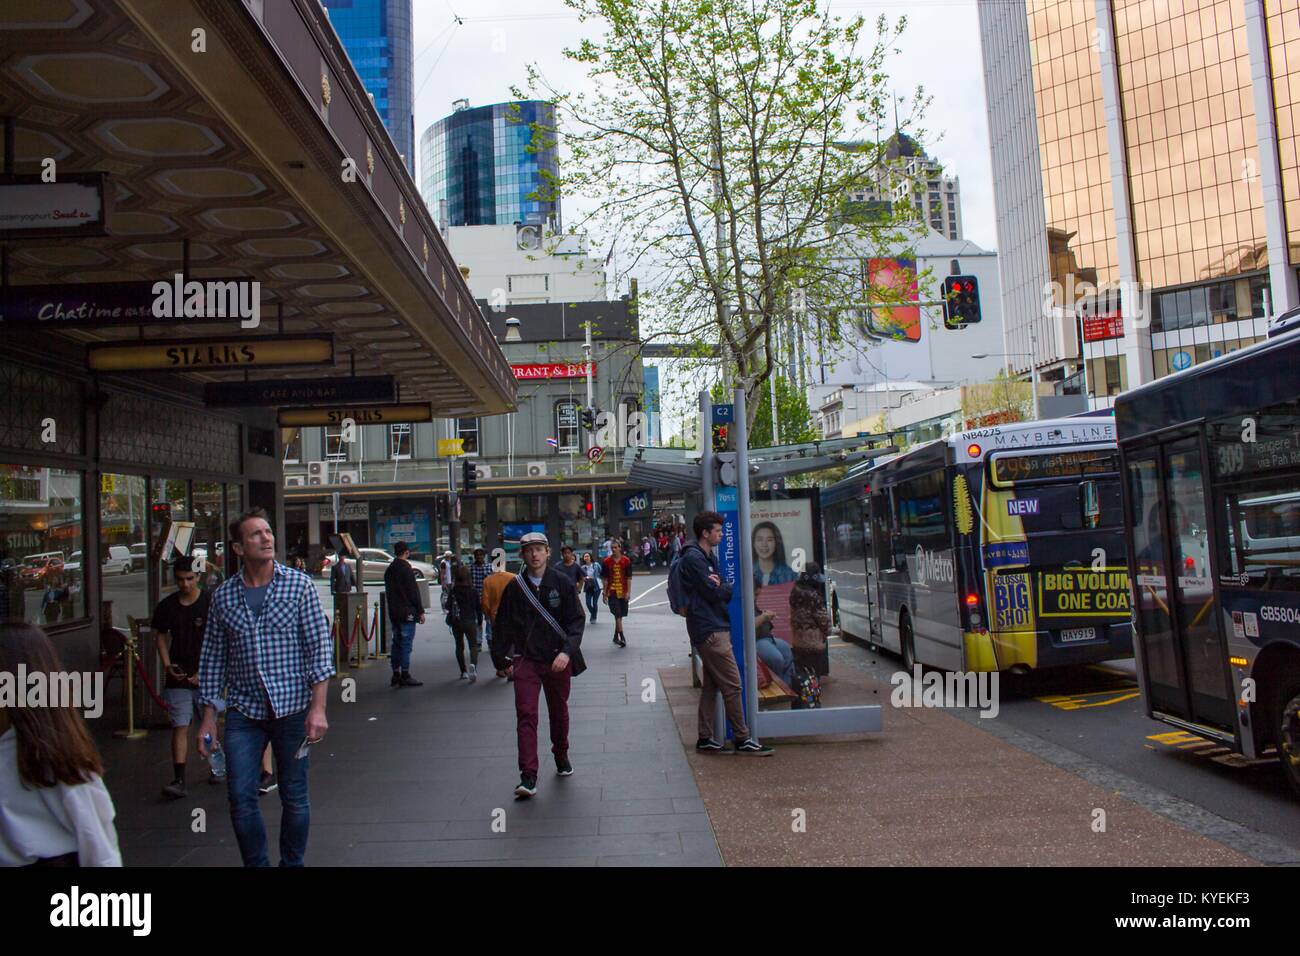 Les gens et les autobus de transport en commun sont visibles à l'extérieur des magasins de détail sur Queen Street, une rue commerçante populaire à Auckland, Nouvelle-Zélande, le 10 octobre 2017. () Banque D'Images